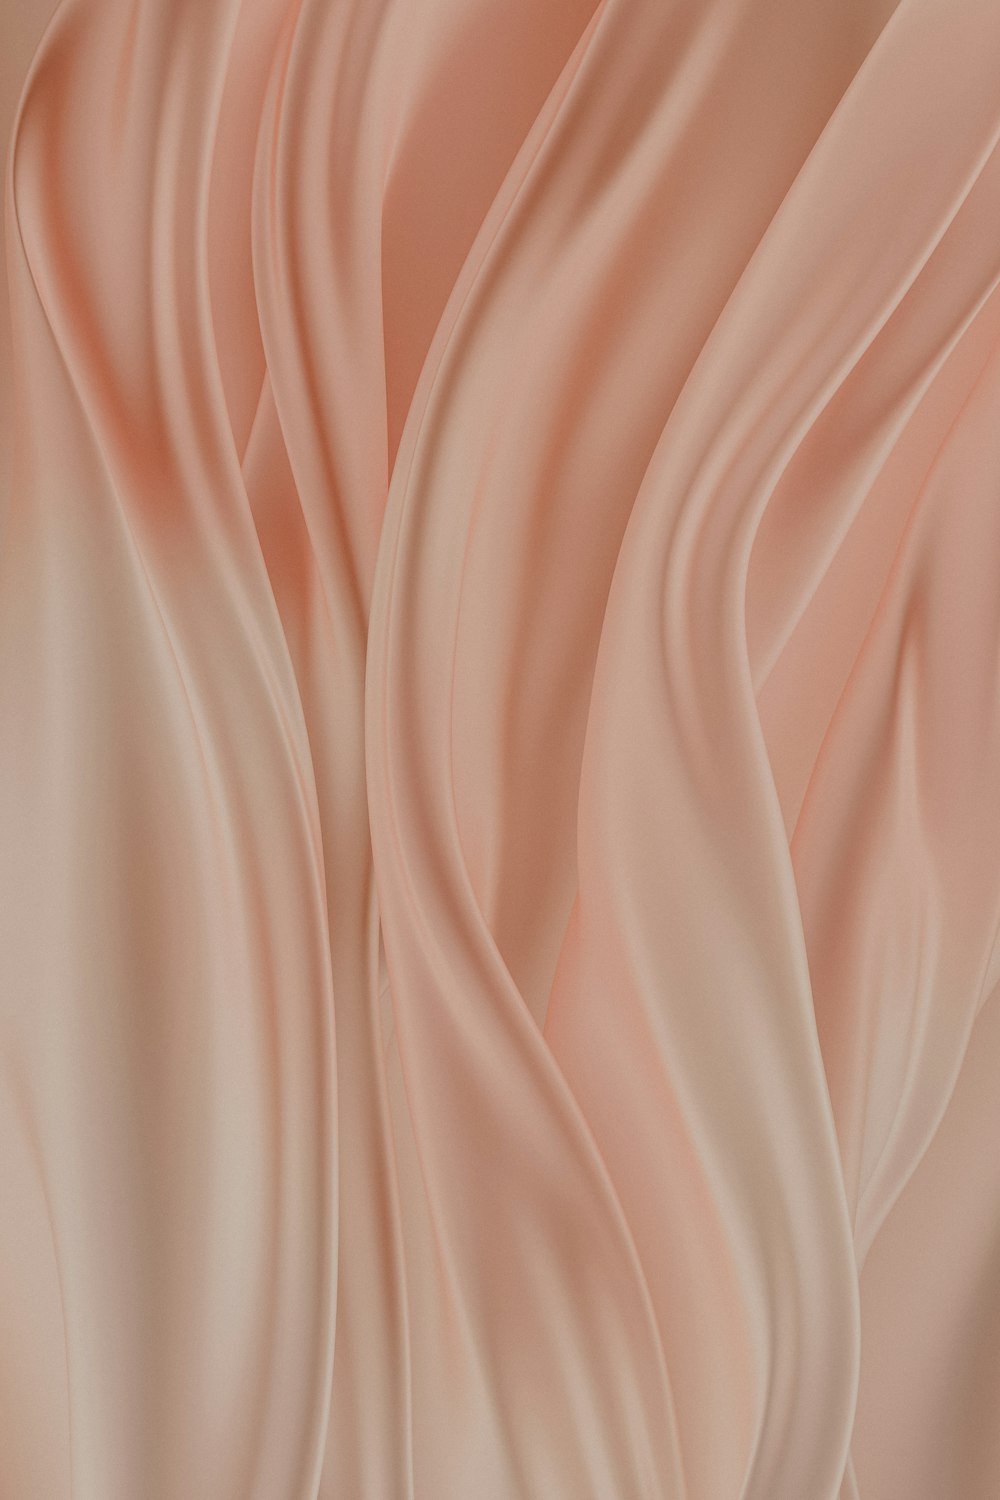 Un fond rose tendre avec des plis ondulés